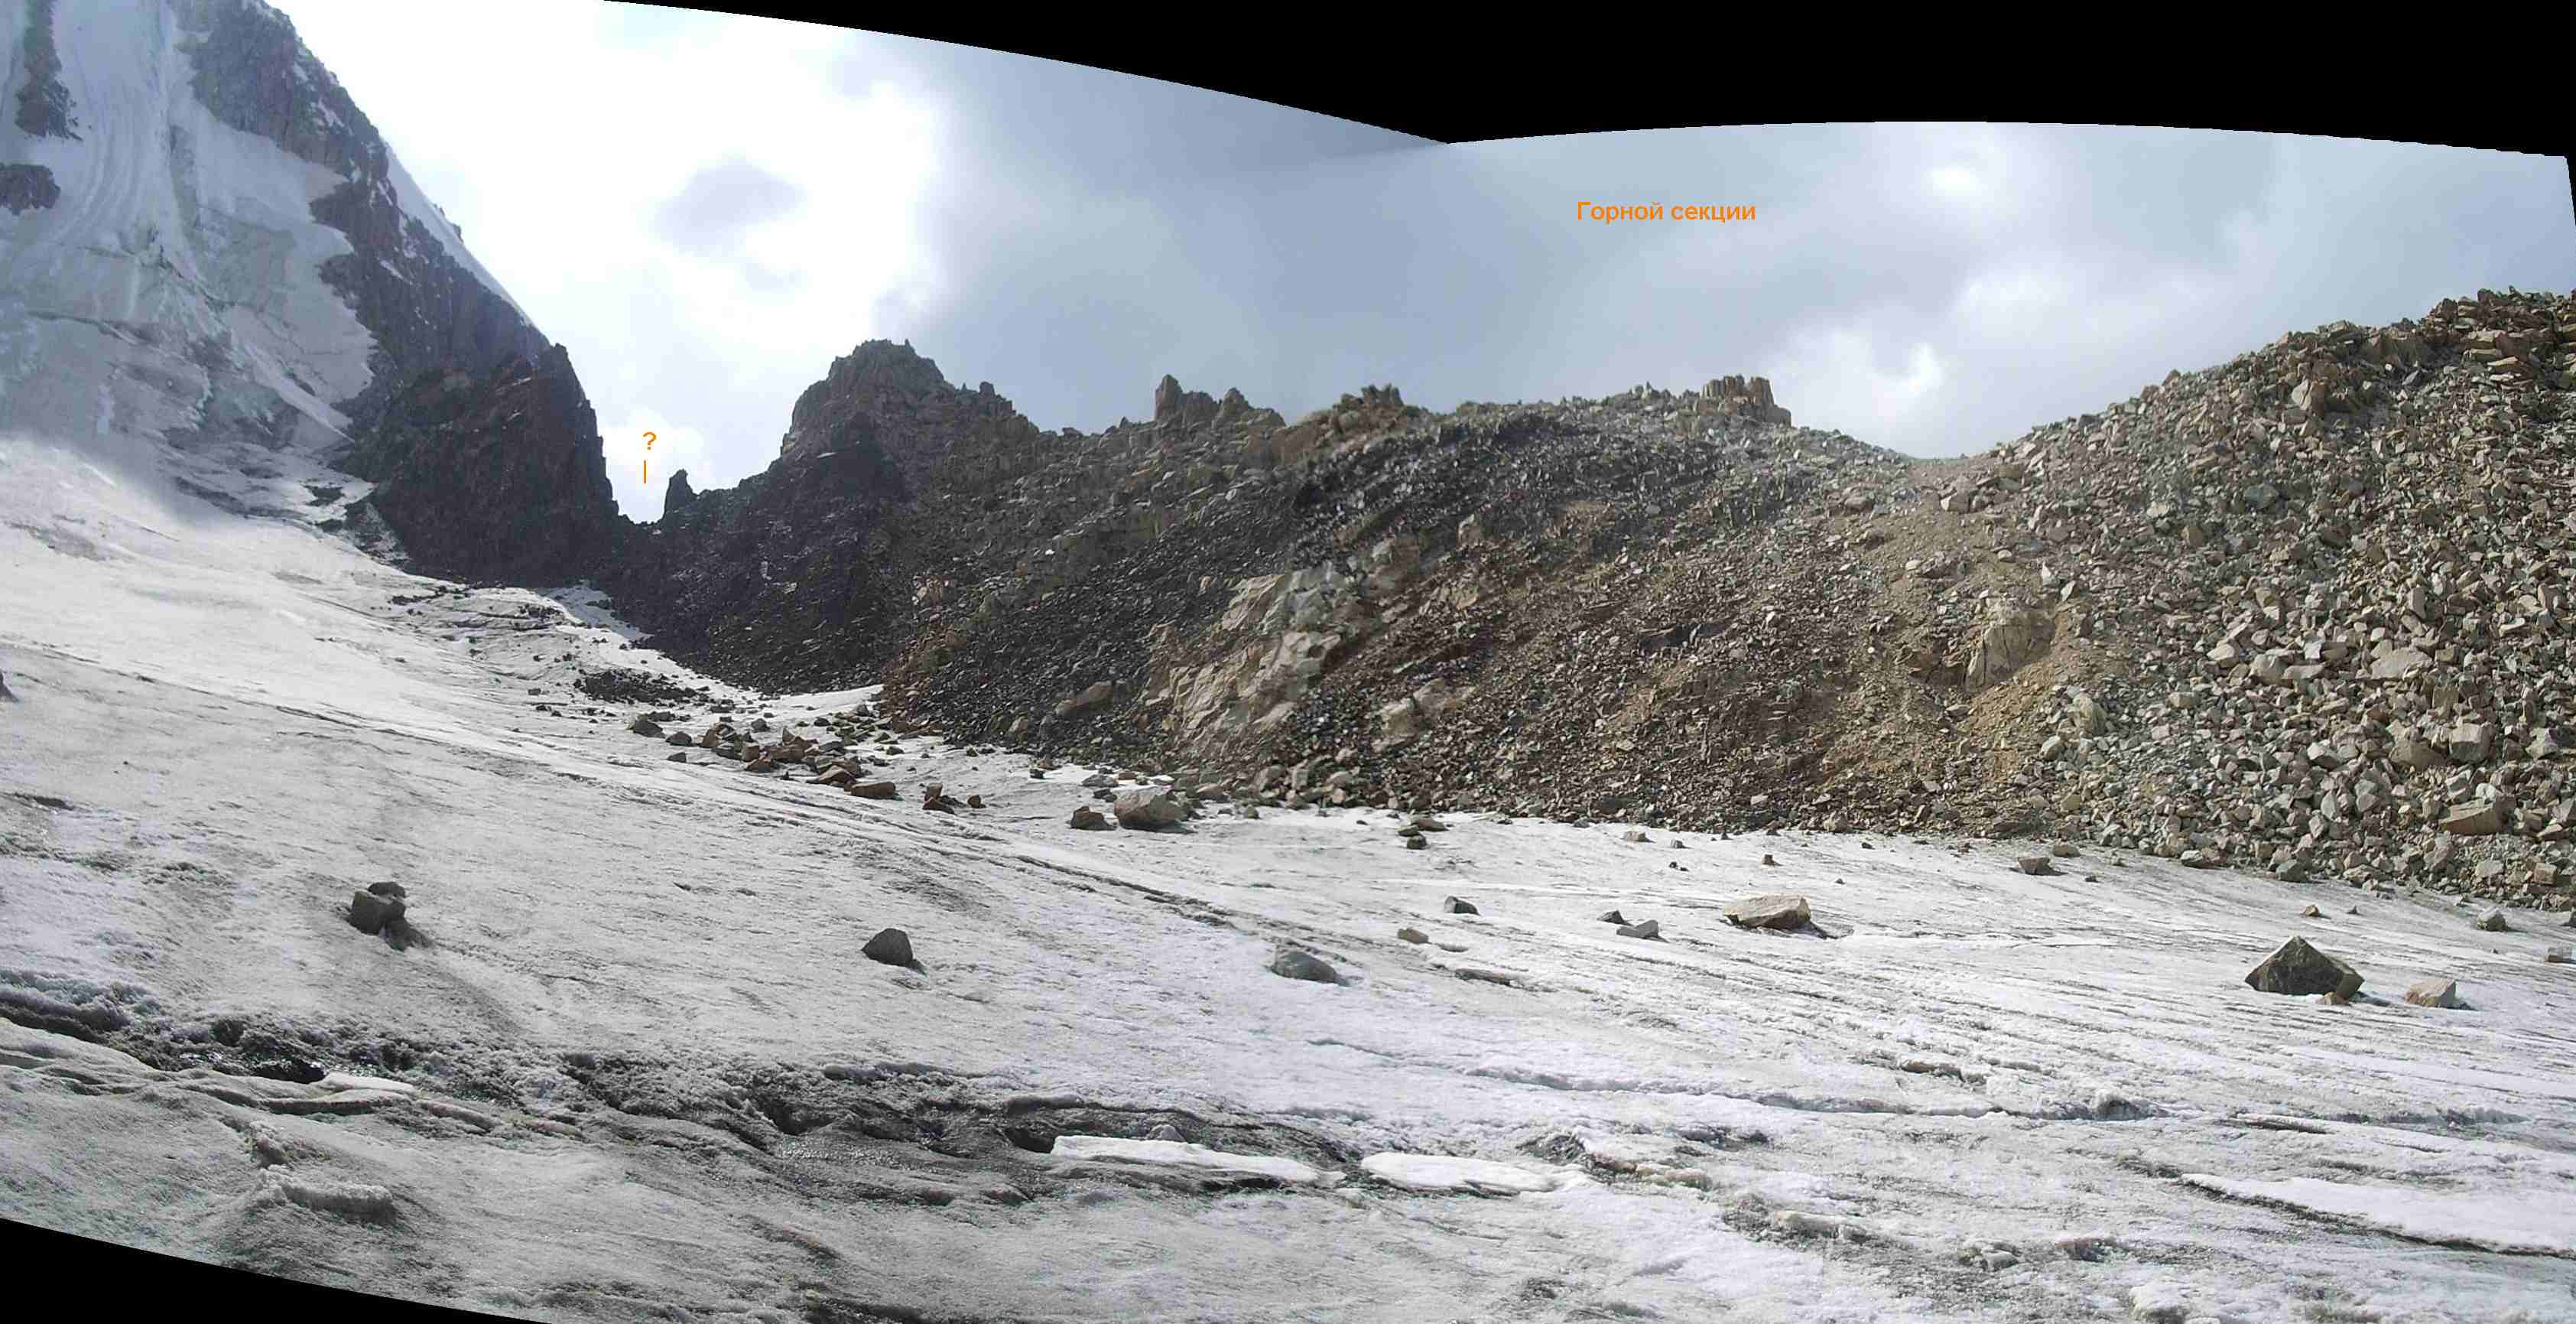 Вид на перевал Горной секции со стороны лед. №166. Фото Дороговой Юлии.